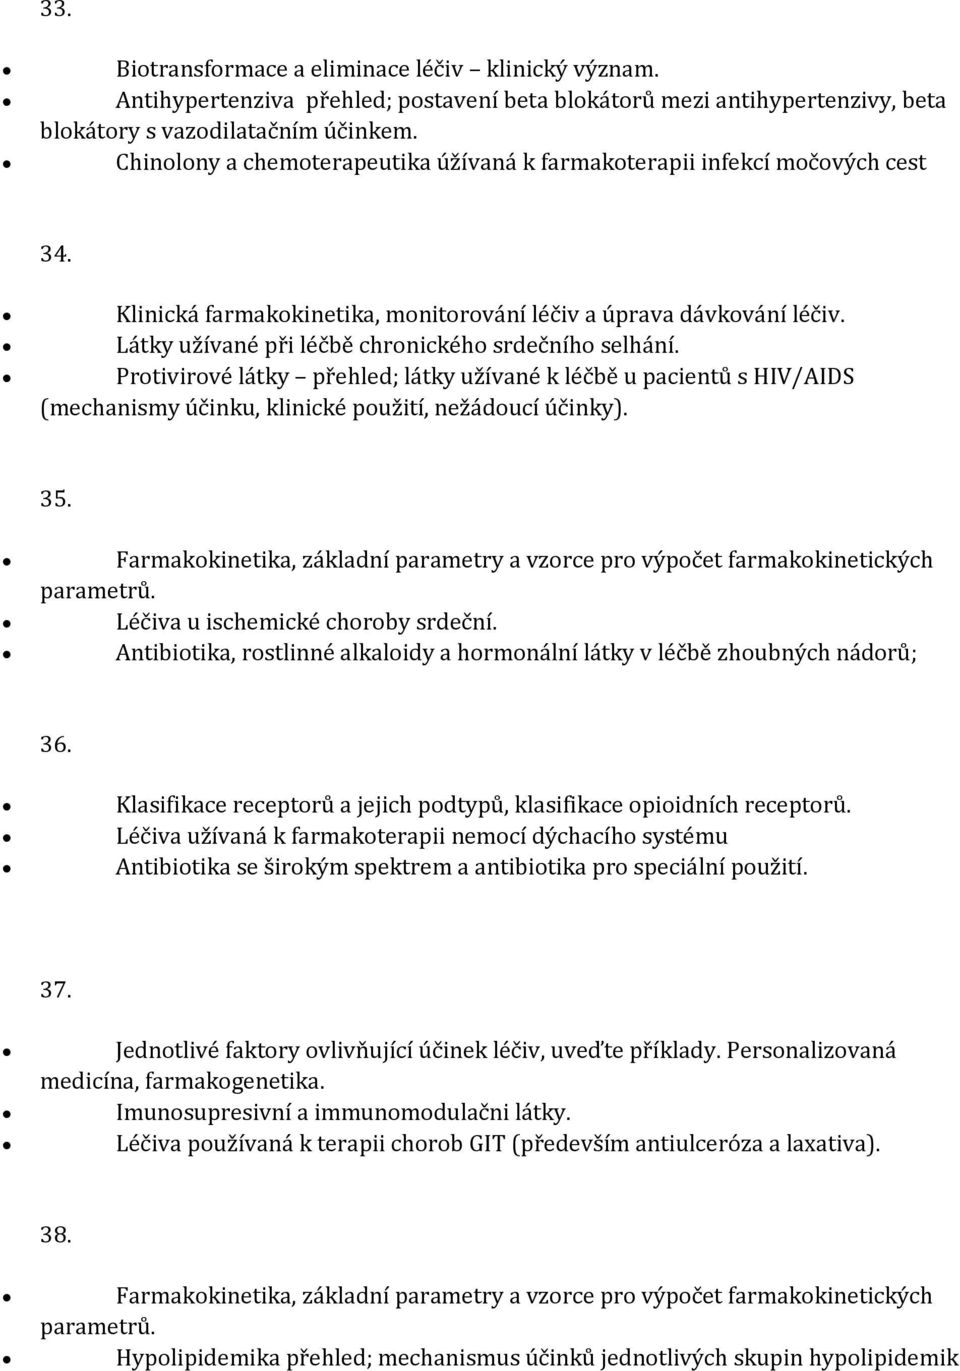 Látky užívané při léčbě chronického srdečního selhání. Protivirové látky přehled; látky užívané k léčbě u pacientů s HIV/AIDS (mechanismy účinku, klinické použití, nežádoucí účinky). 35.